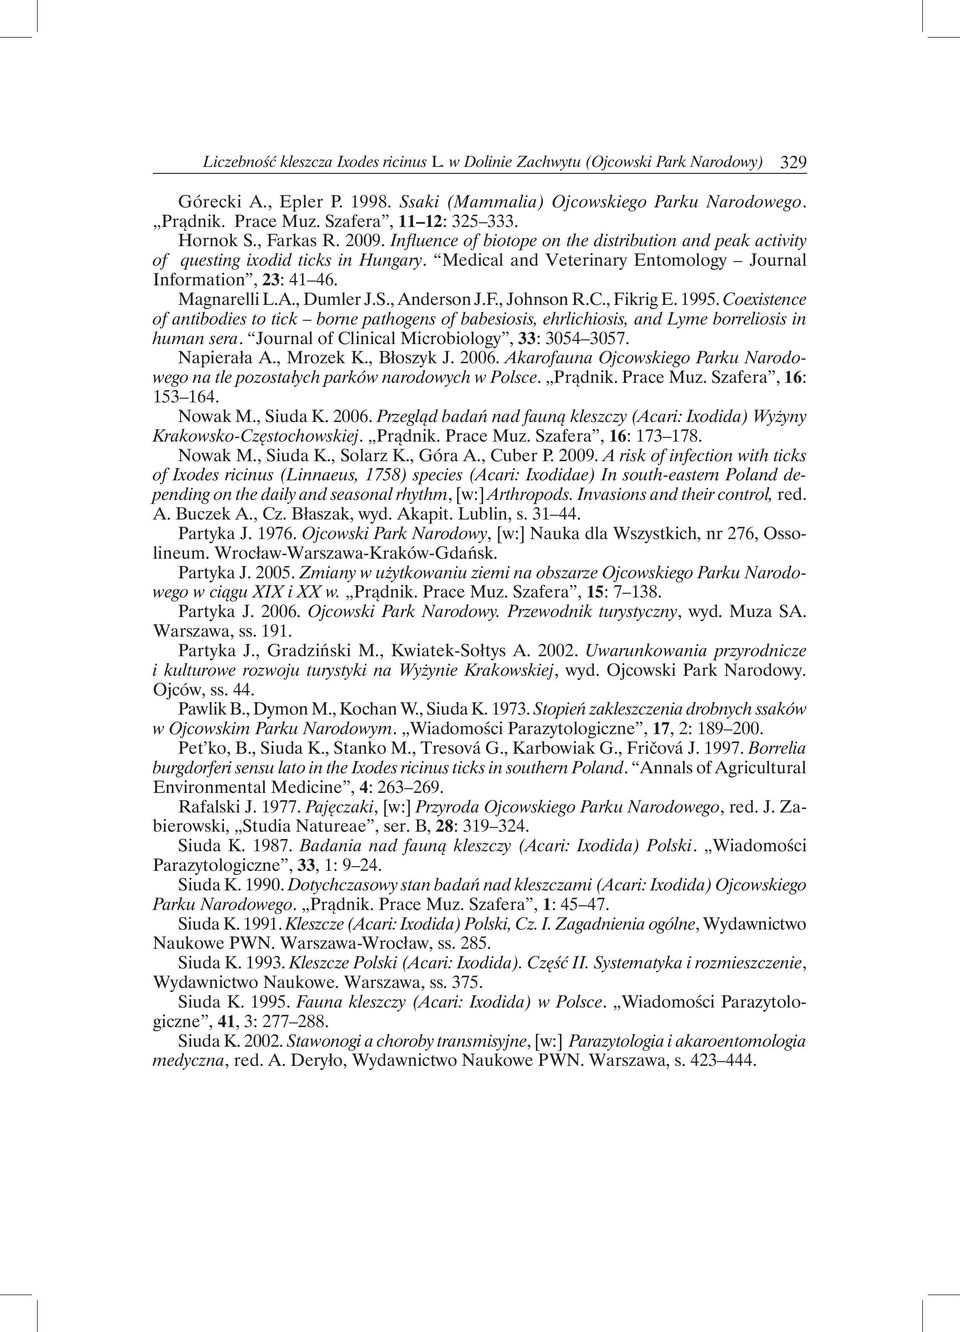 Medical and Veterinary Entomology Journal Information, 23: 41 46. Magnarelli L.A., Dumler J.S., Anderson J.F., Johnson R.C., Fikrig E. 1995.